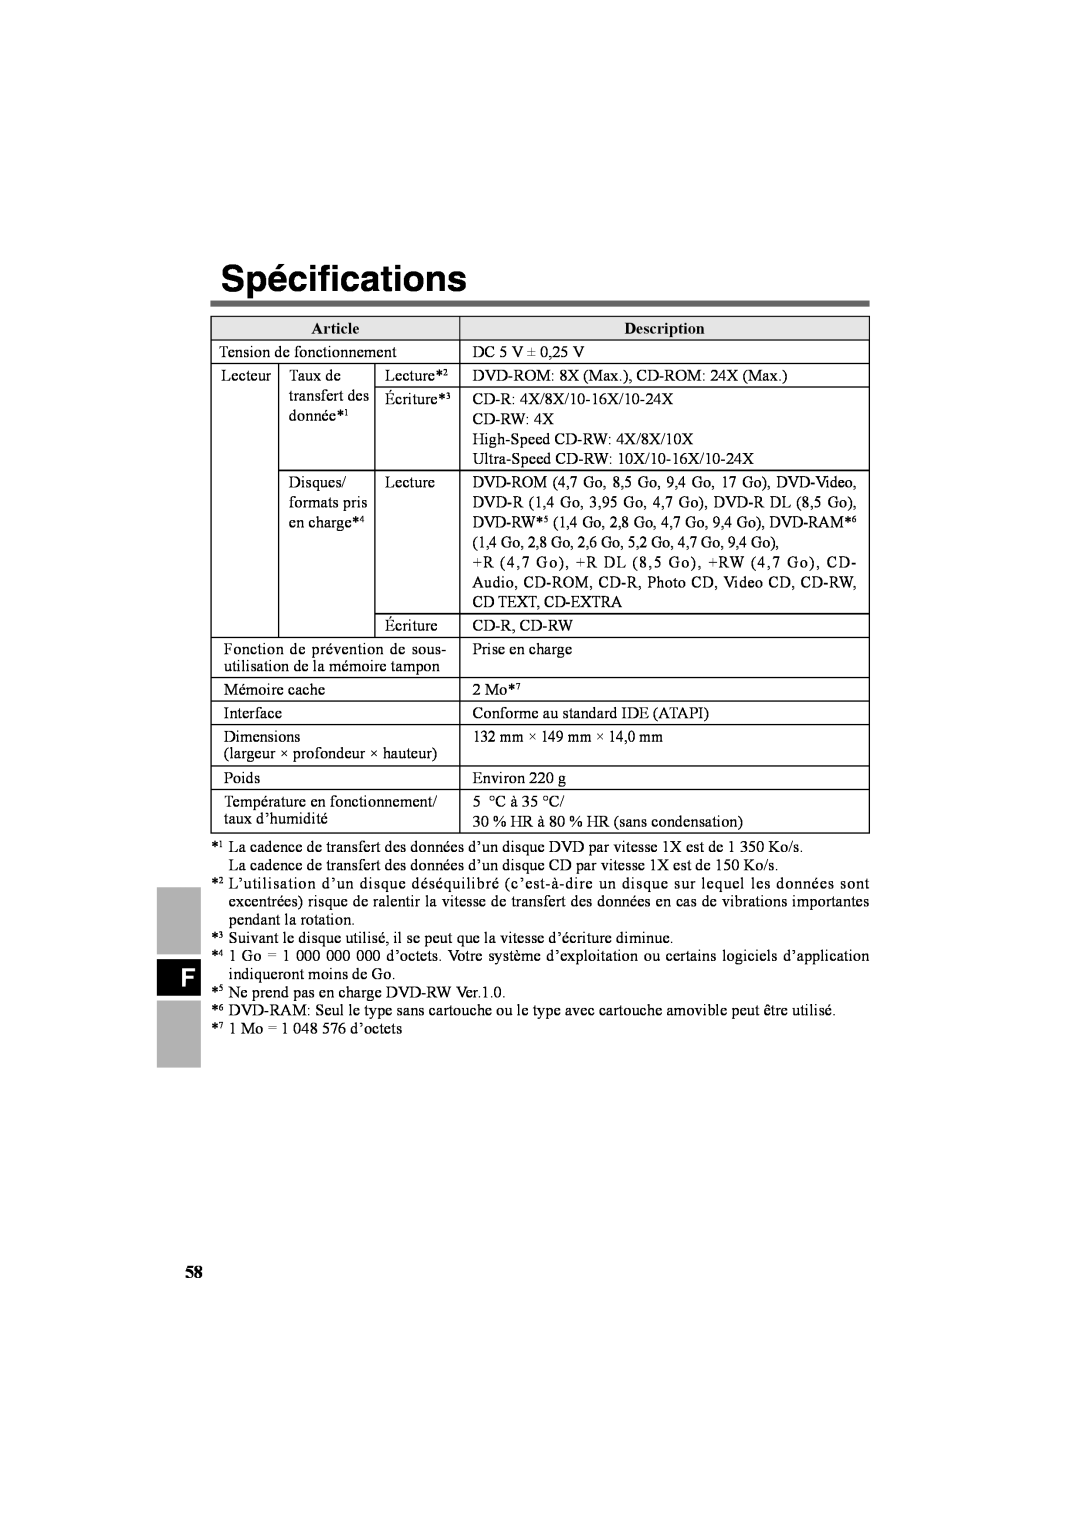 Panasonic CF-VDR301U specifications Spéciﬁcations, Article, Description, DVD-RW* 5 1,4 Go, 2,8 Go, 4,7 Go, 9,4 Go, DVD-RAM 